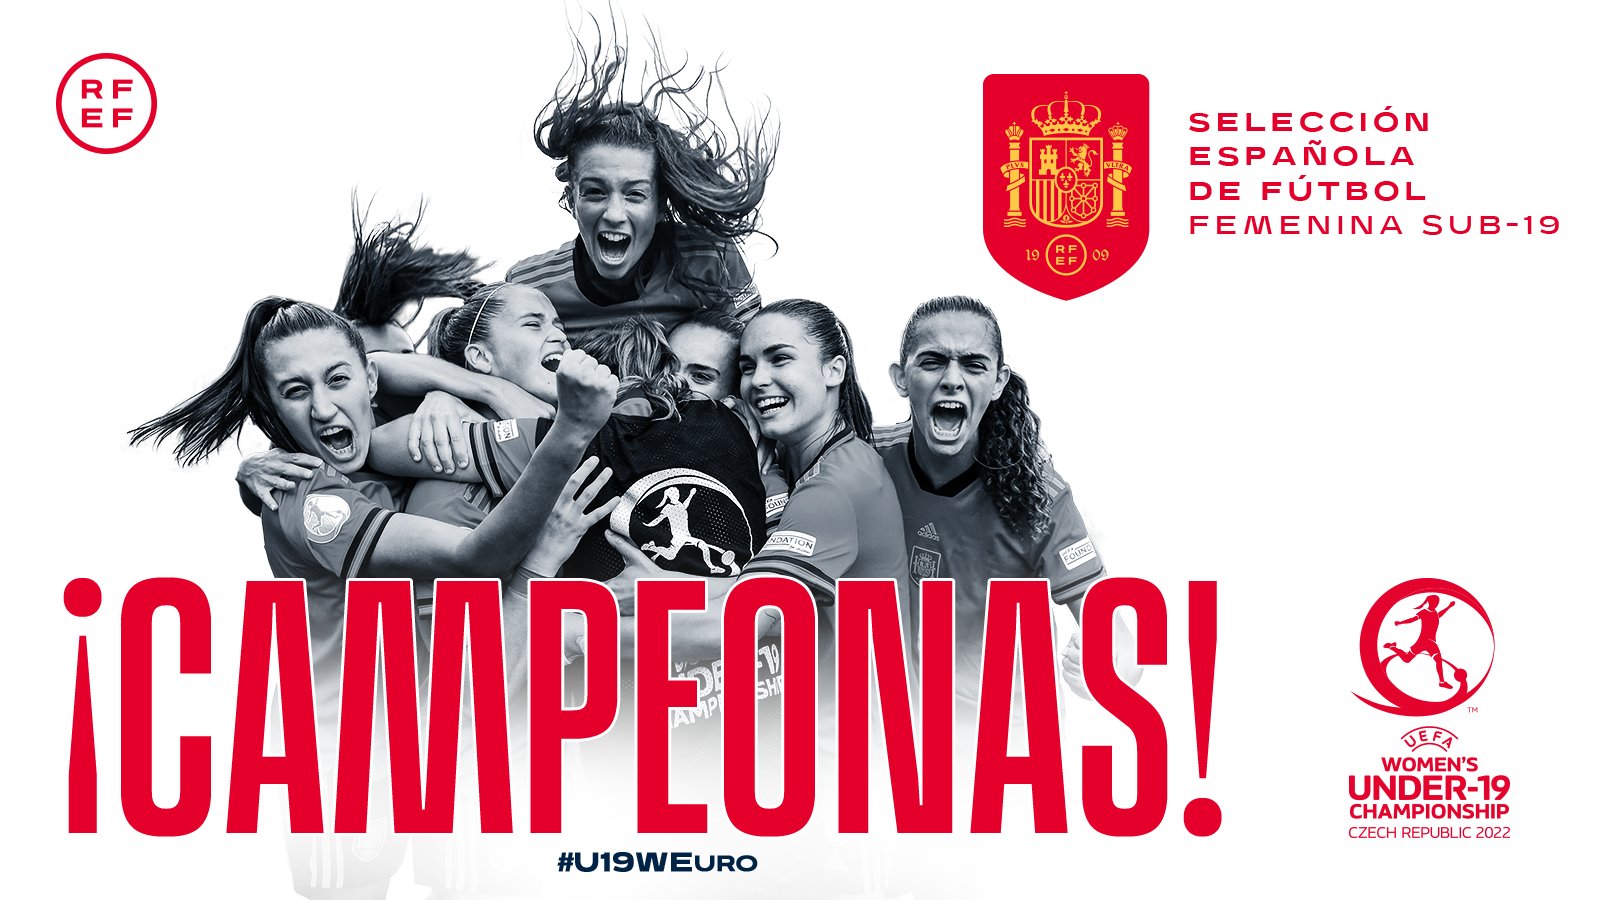 Selección Española Femenina de Fútbol on Twitter: "🏆 ¡¡LO HEMOS CONSEGUIDO!! ¡¡𝗦𝗢𝗠𝗢𝗦 𝗖𝗔𝗠𝗣𝗘𝗢𝗡𝗔𝗦 𝗗𝗘 𝗦𝗨𝗕-𝟭𝟵!! 👏🏻 El es vuestro, chicas. ¡¡UNA GENERACIÓN PARA EL RECUERDO!! #U19WEURO https://t.co/0gJVAcVGKA ...